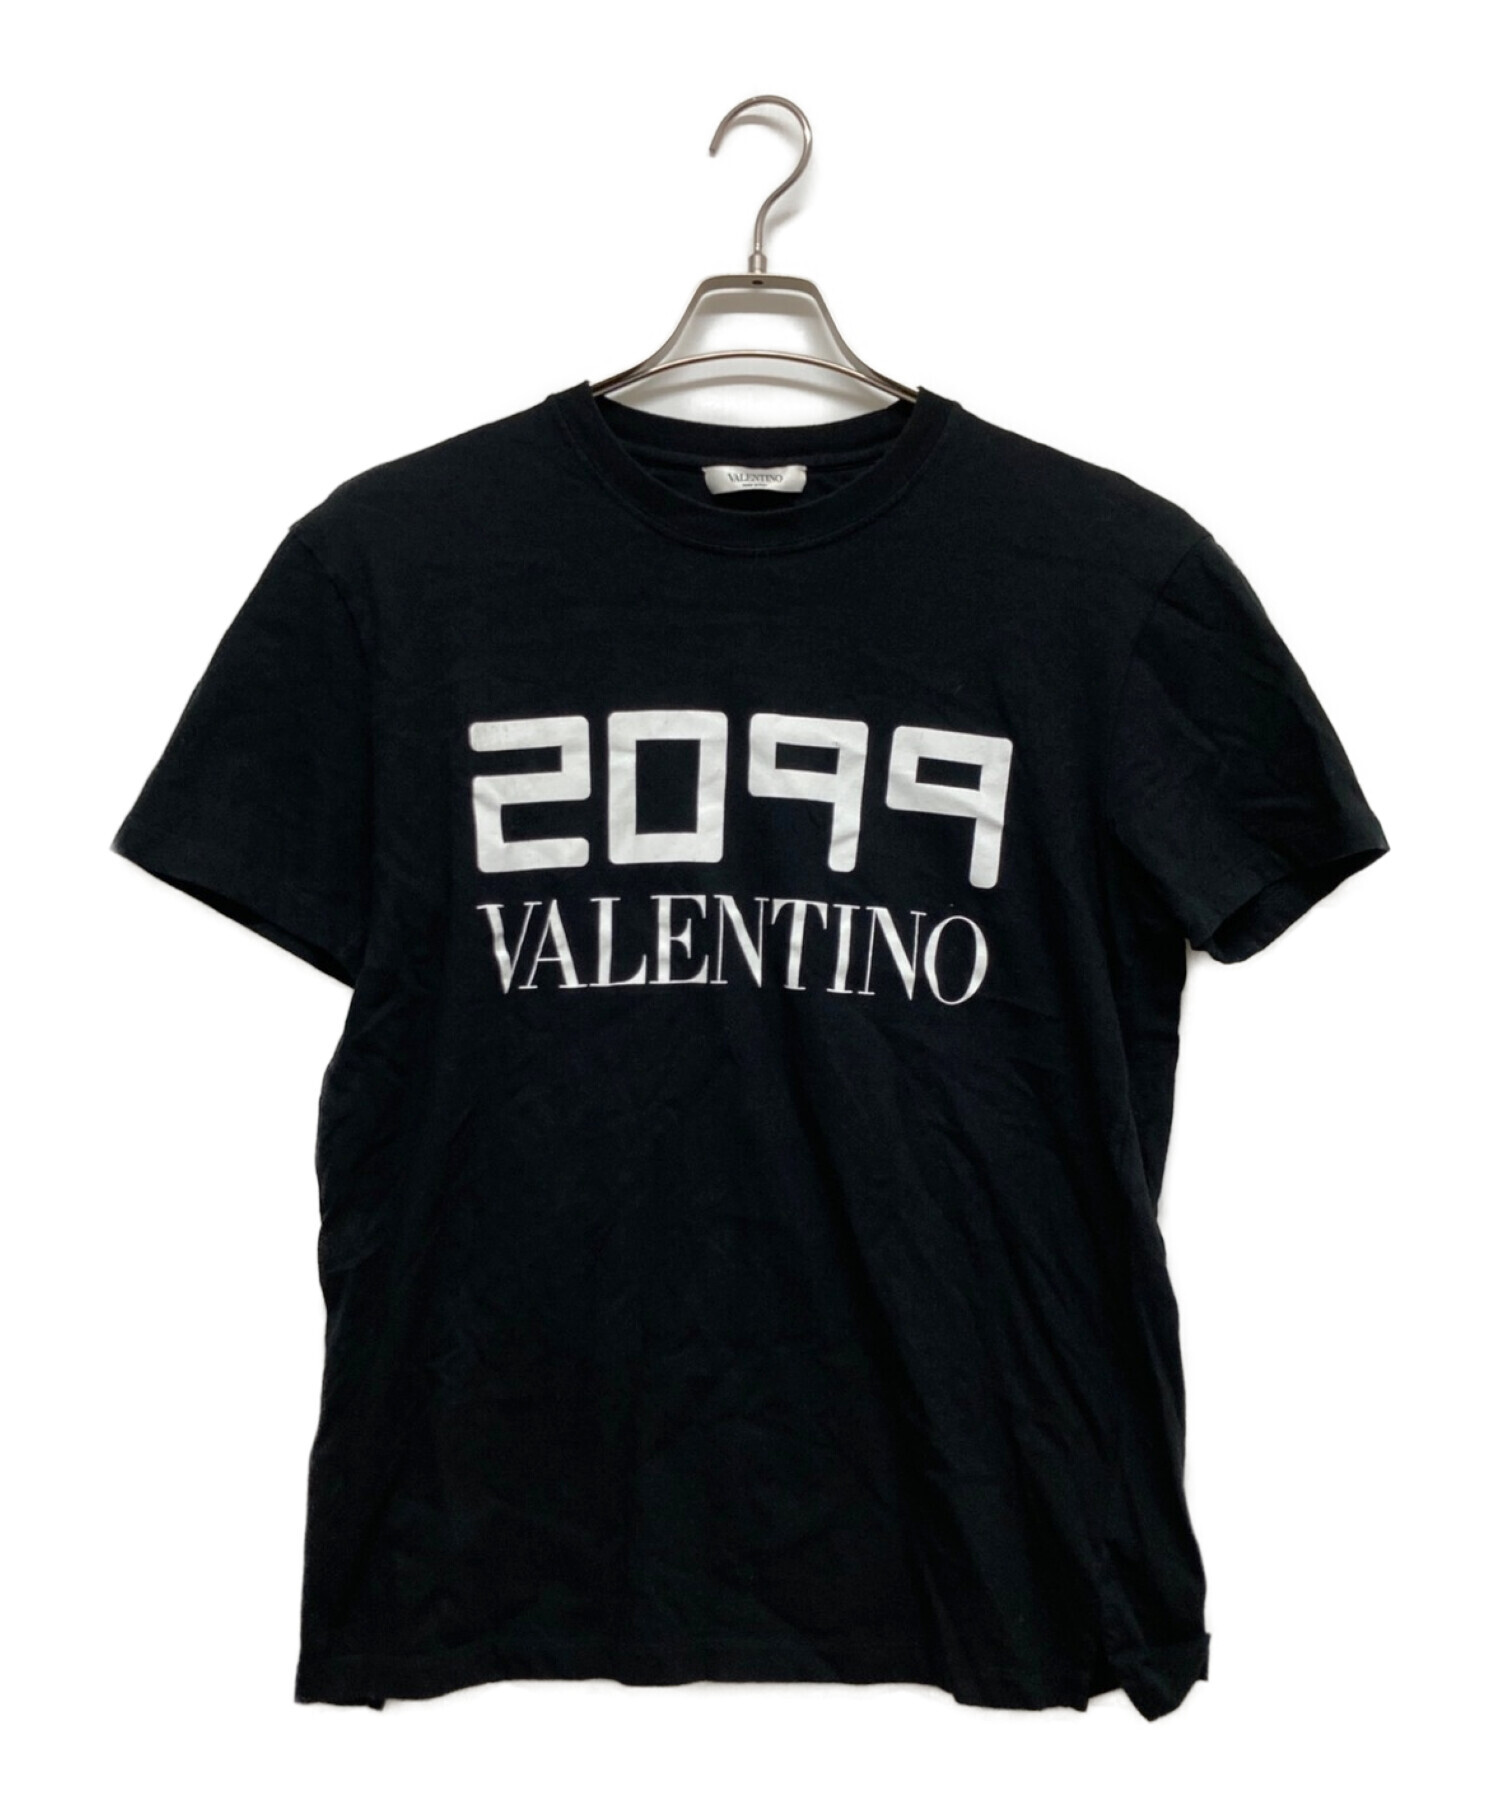 中古・古着通販】VALENTINO (ヴァレンティノ) 2099ロゴTシャツ ...